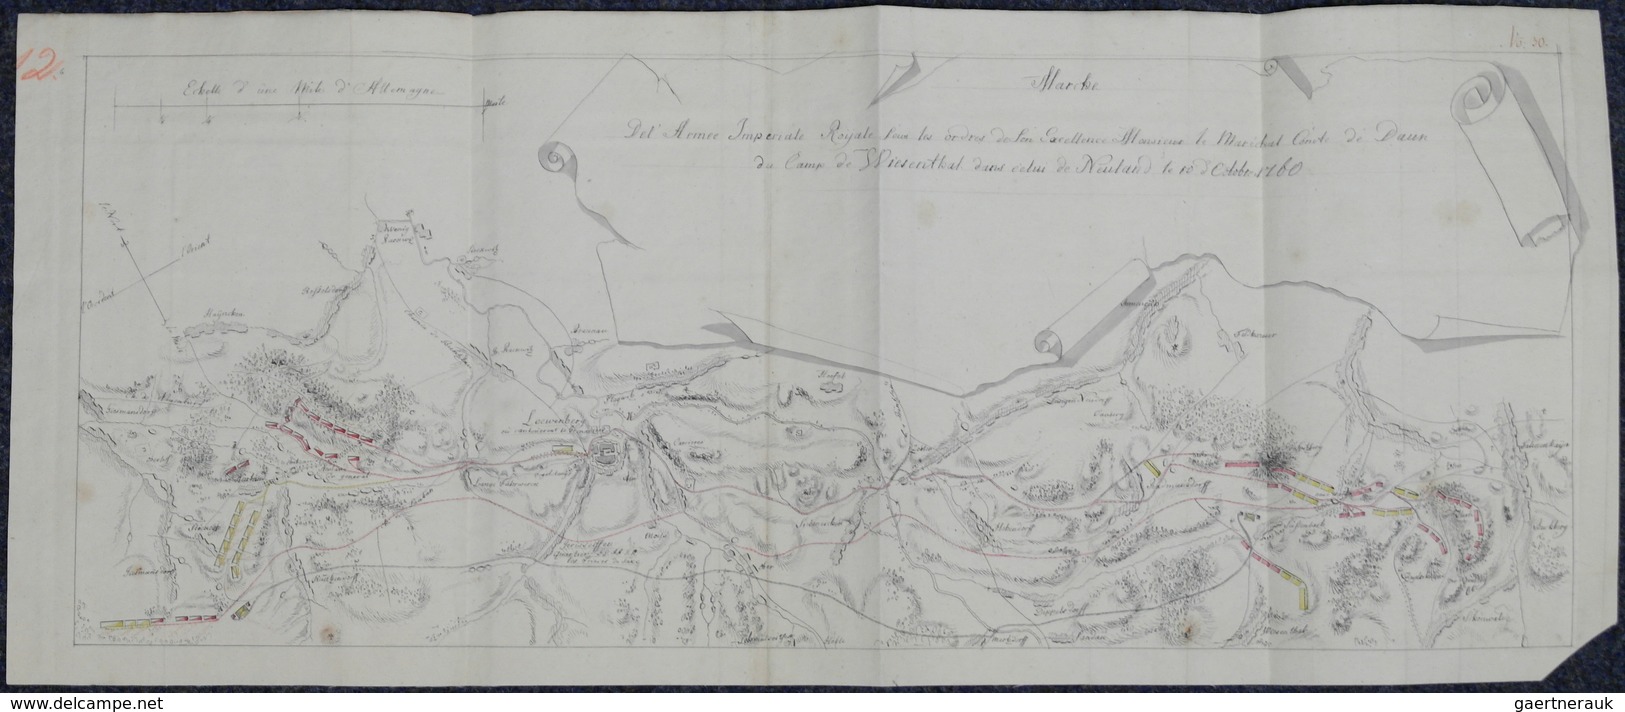 Landkarten und Stiche: 1580/1820 (ca). Bestand von über 130 alten Landkarten, meist colorierte Stich